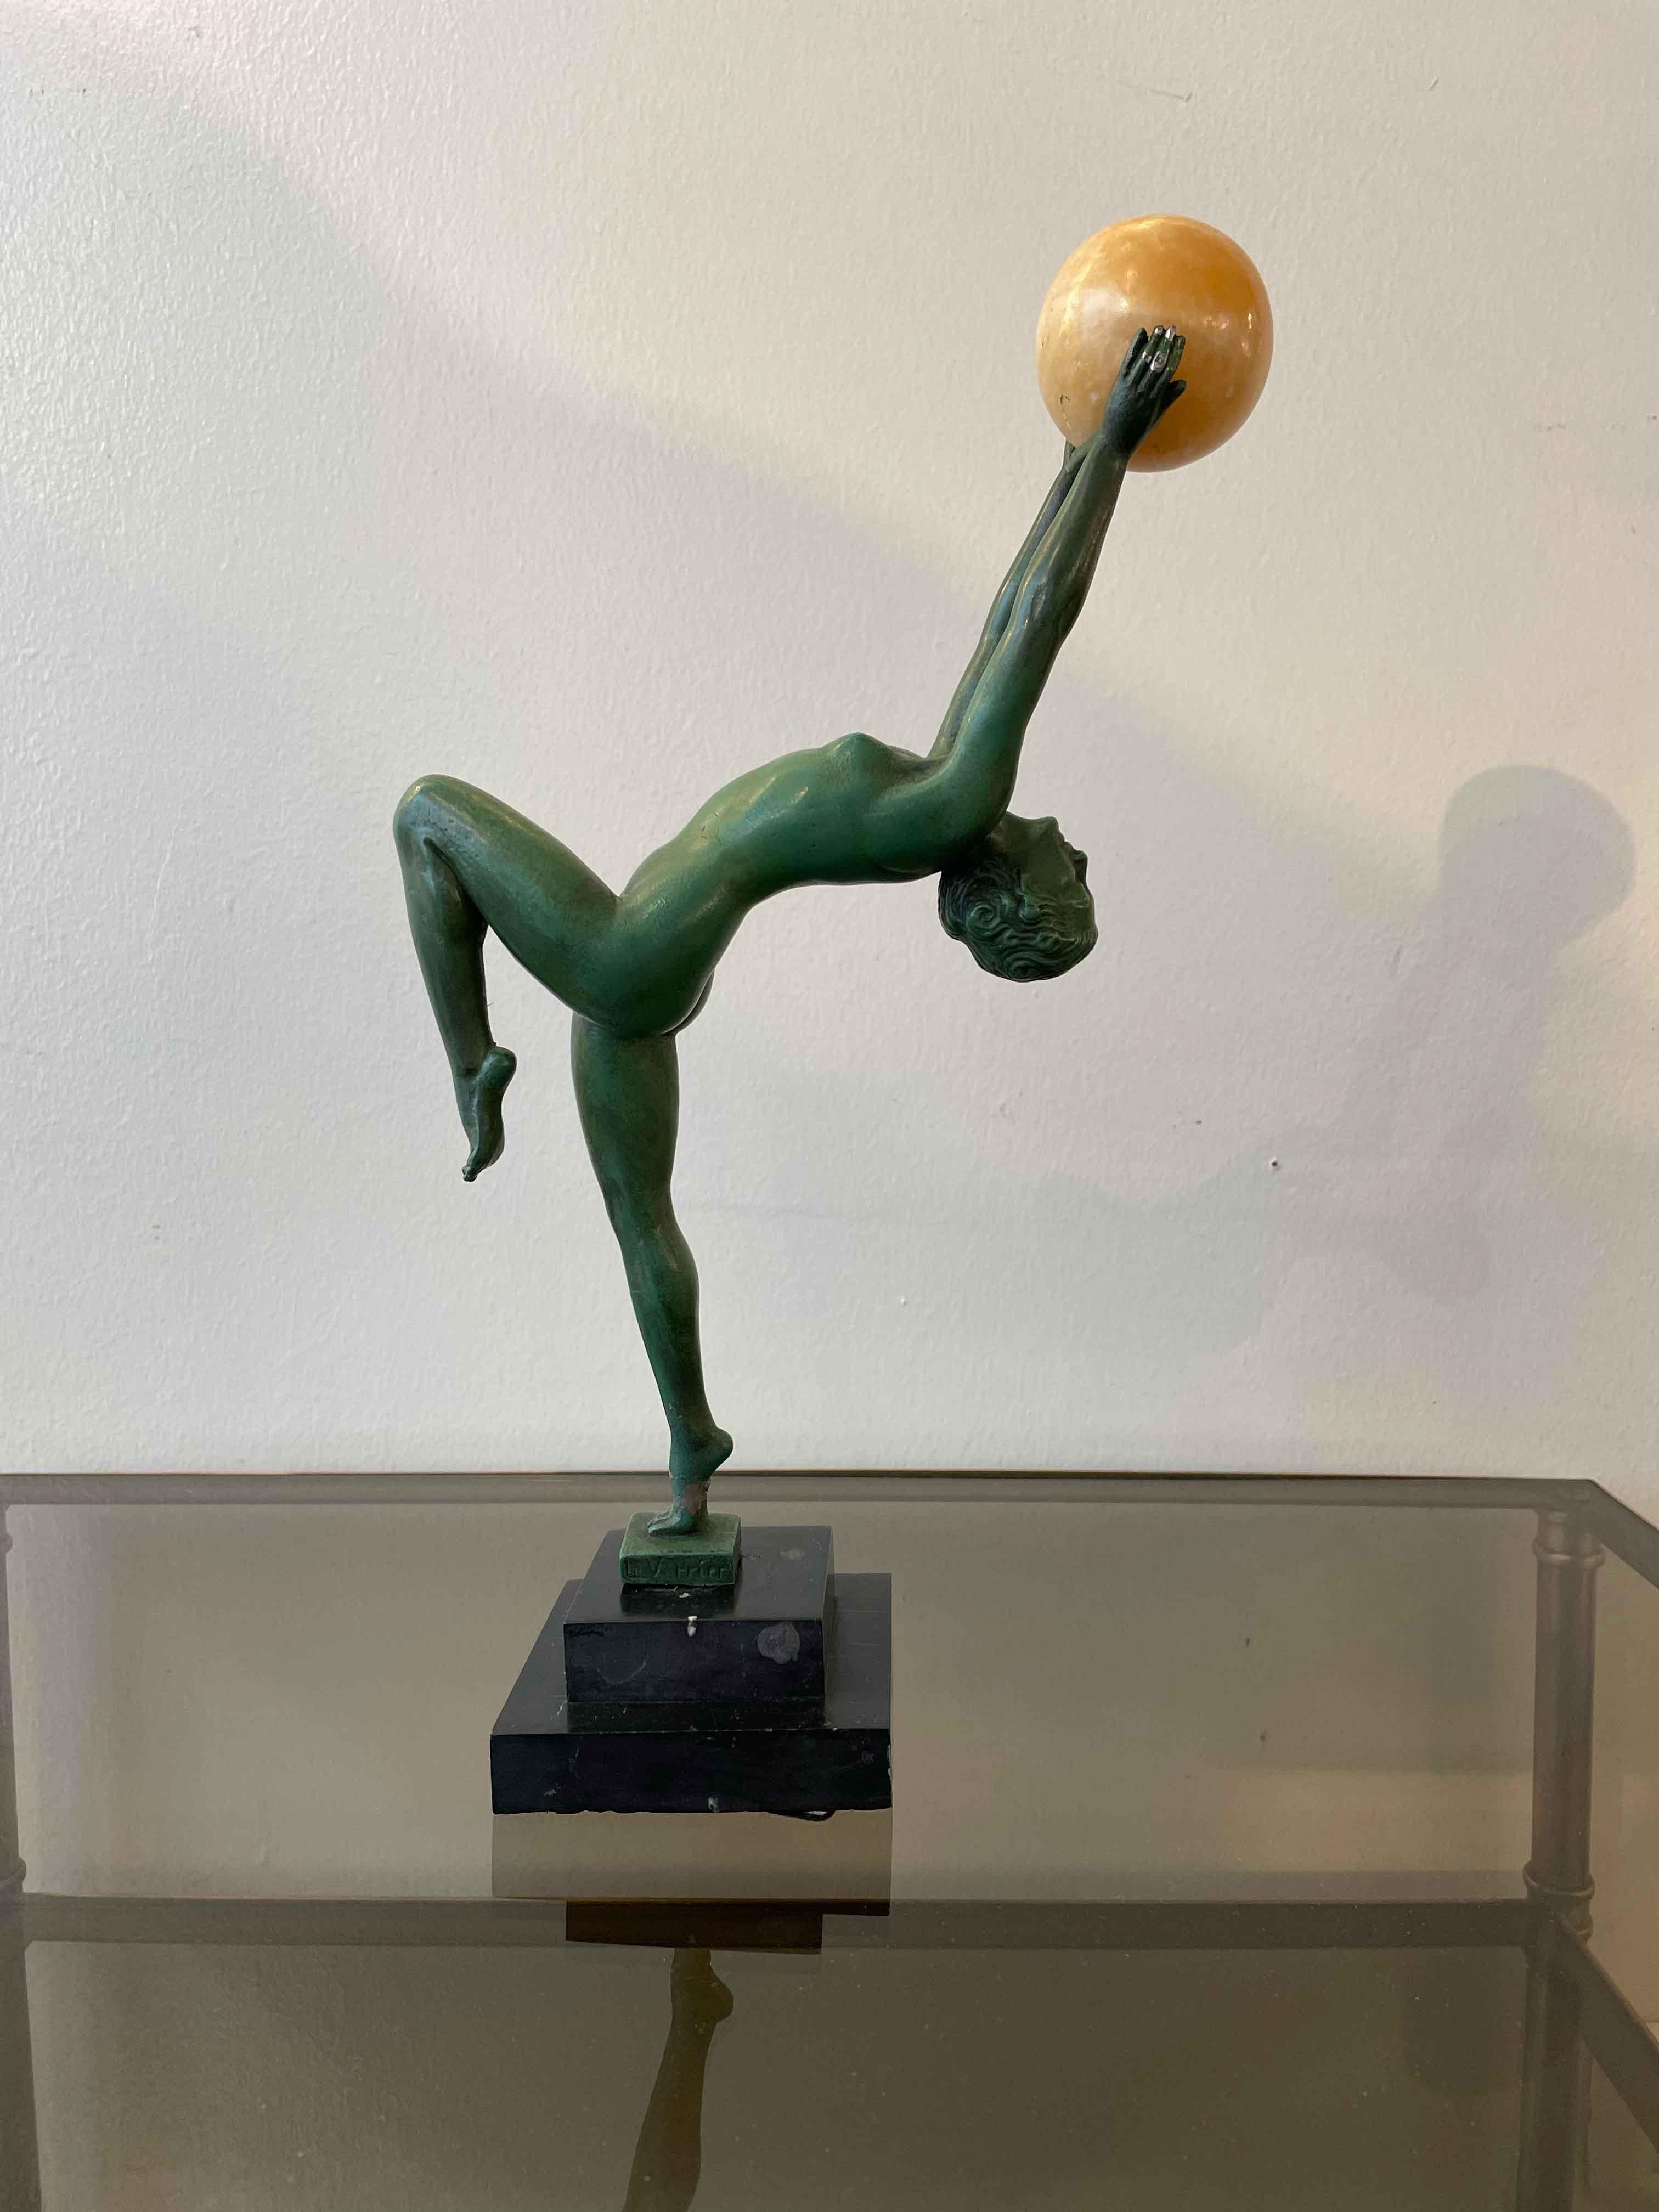 Sculpture Art Déco du Jongleur en bronze patiné par Le Verrier. 
La statue représente une femme aux mouvements très élégants et délicats. Max Le Verrier était connu pour être un pionnier du mouvement Art déco parisien, créant des objets d'art